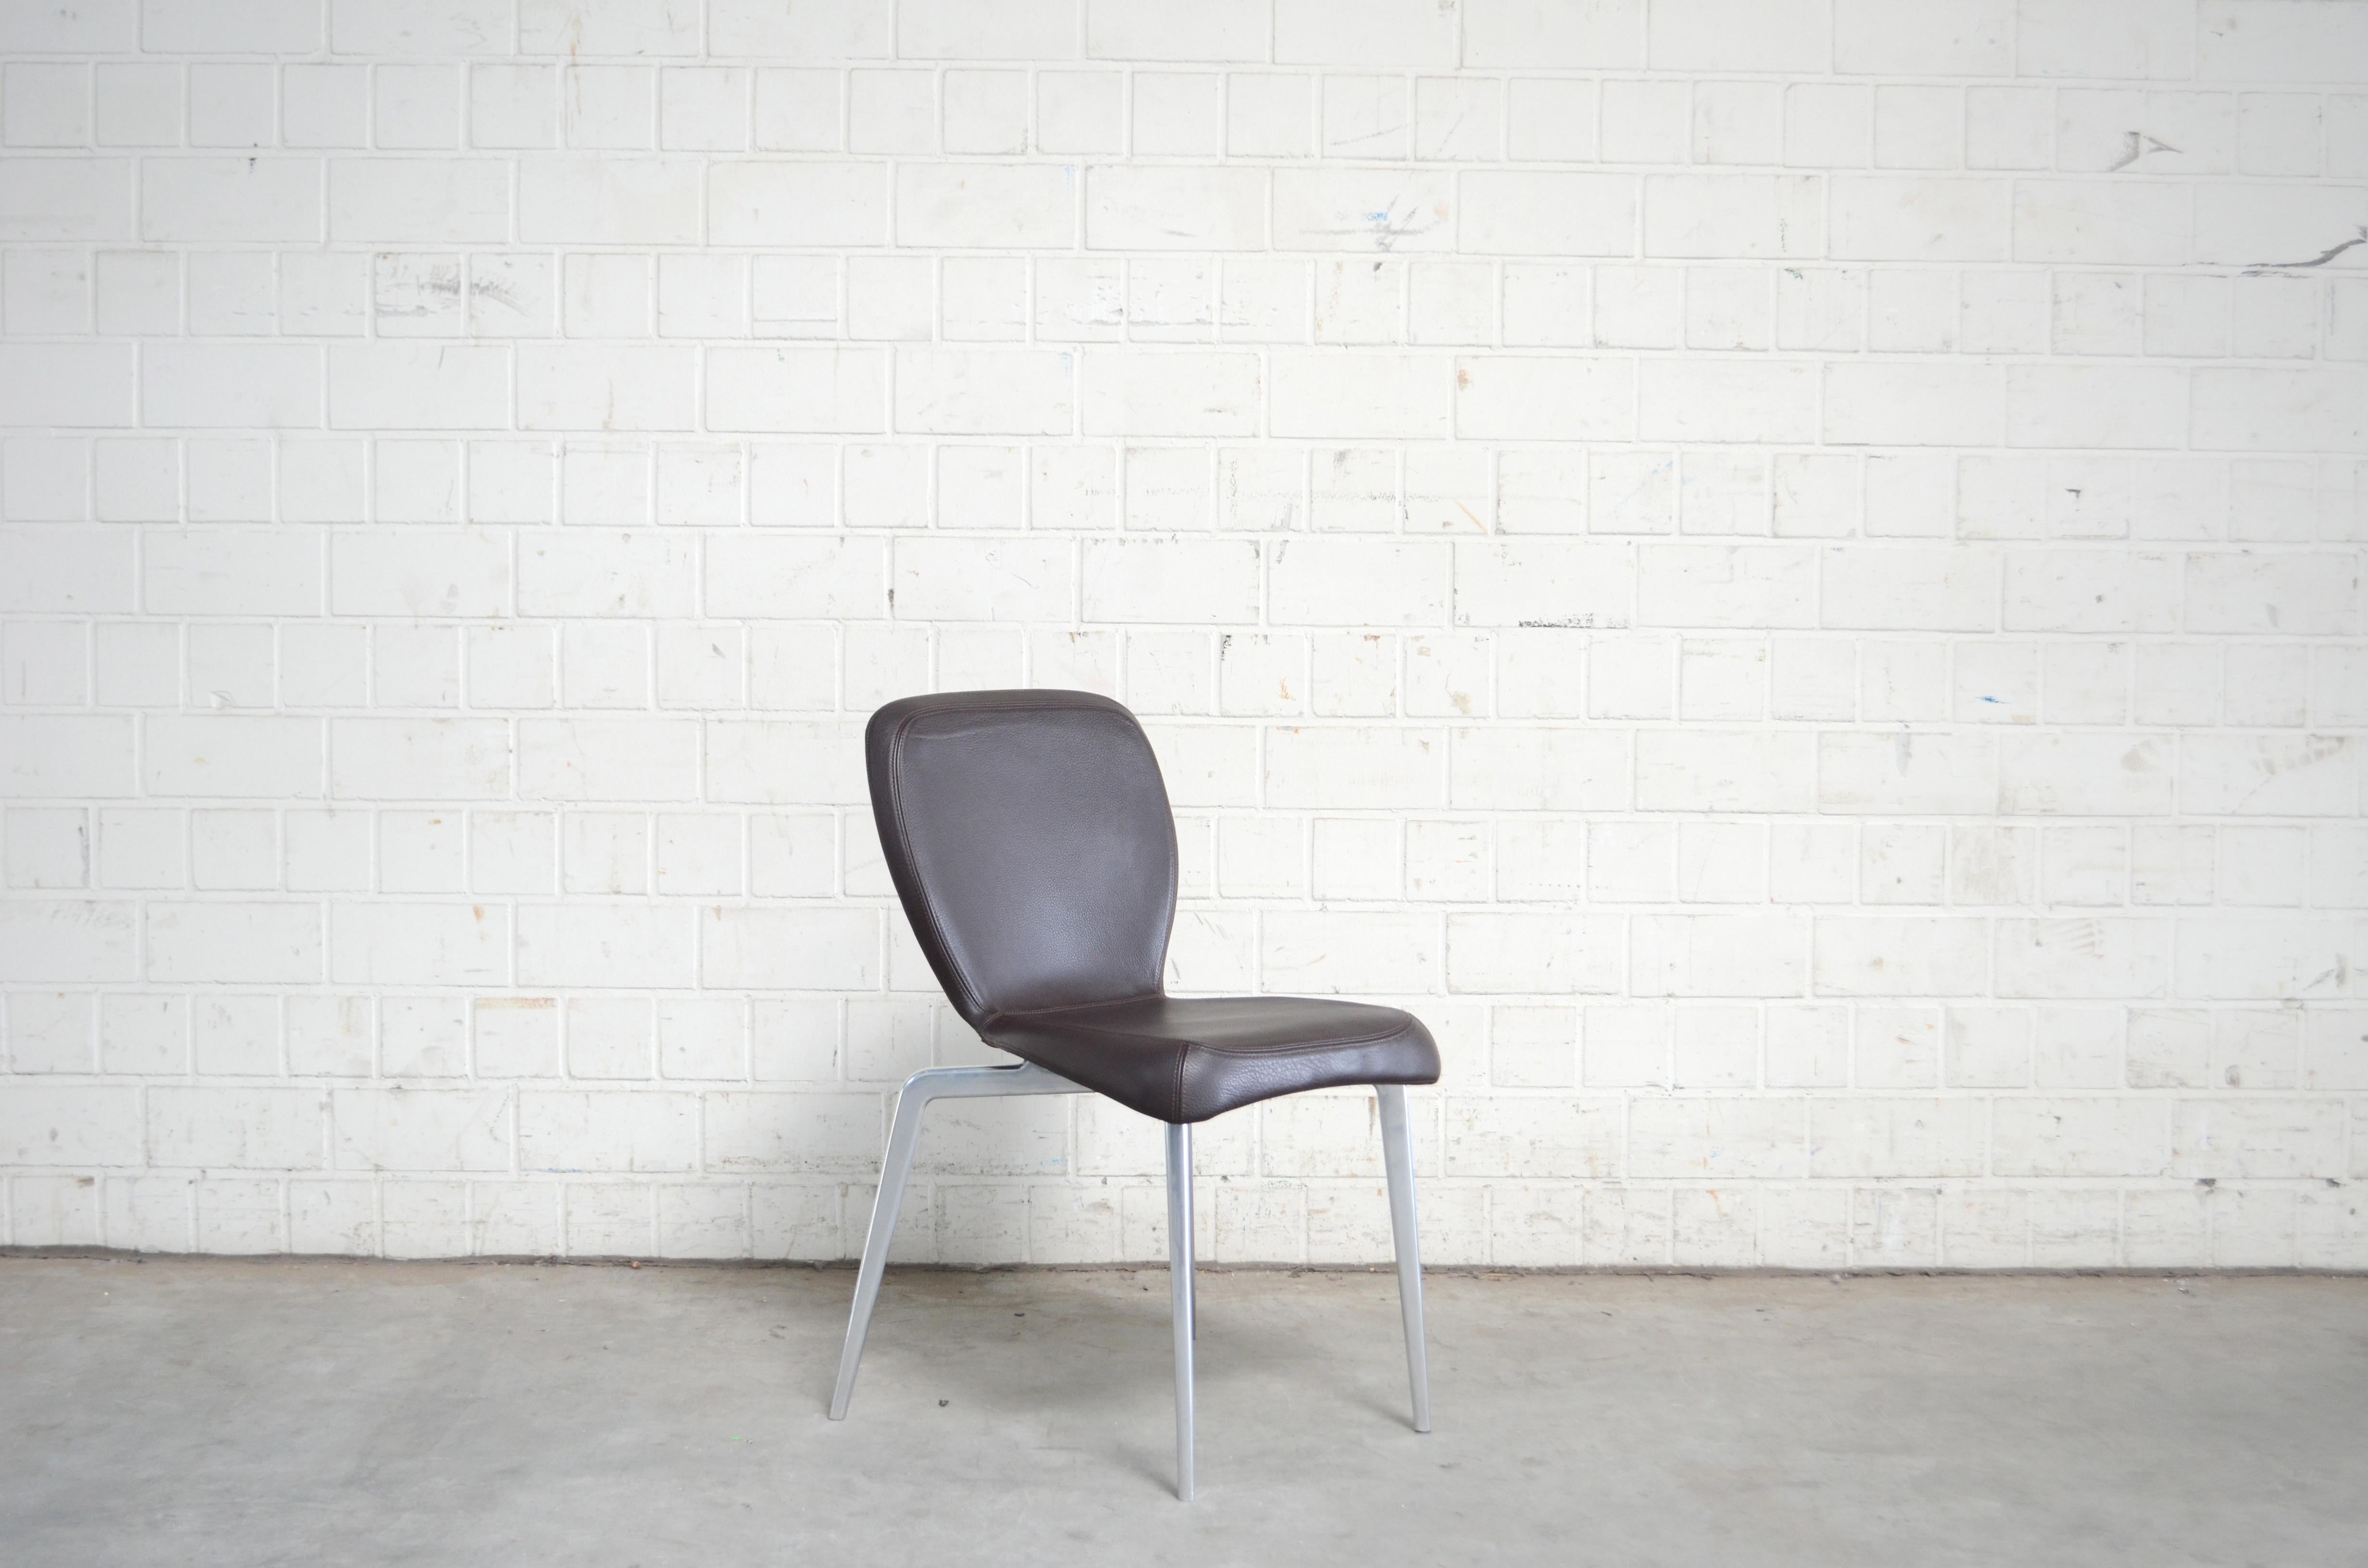 Modell Münchener Stuhl, entworfen von Sauerbruch Hutton.
Hergestellt von ClassiCon.
Bei diesem Objekt handelt es sich um einen seltenen und einzigartigen Prototyp mit einem Aluminiumfuß, der nie auf dem Markt erhältlich war.
Normalerweise findet